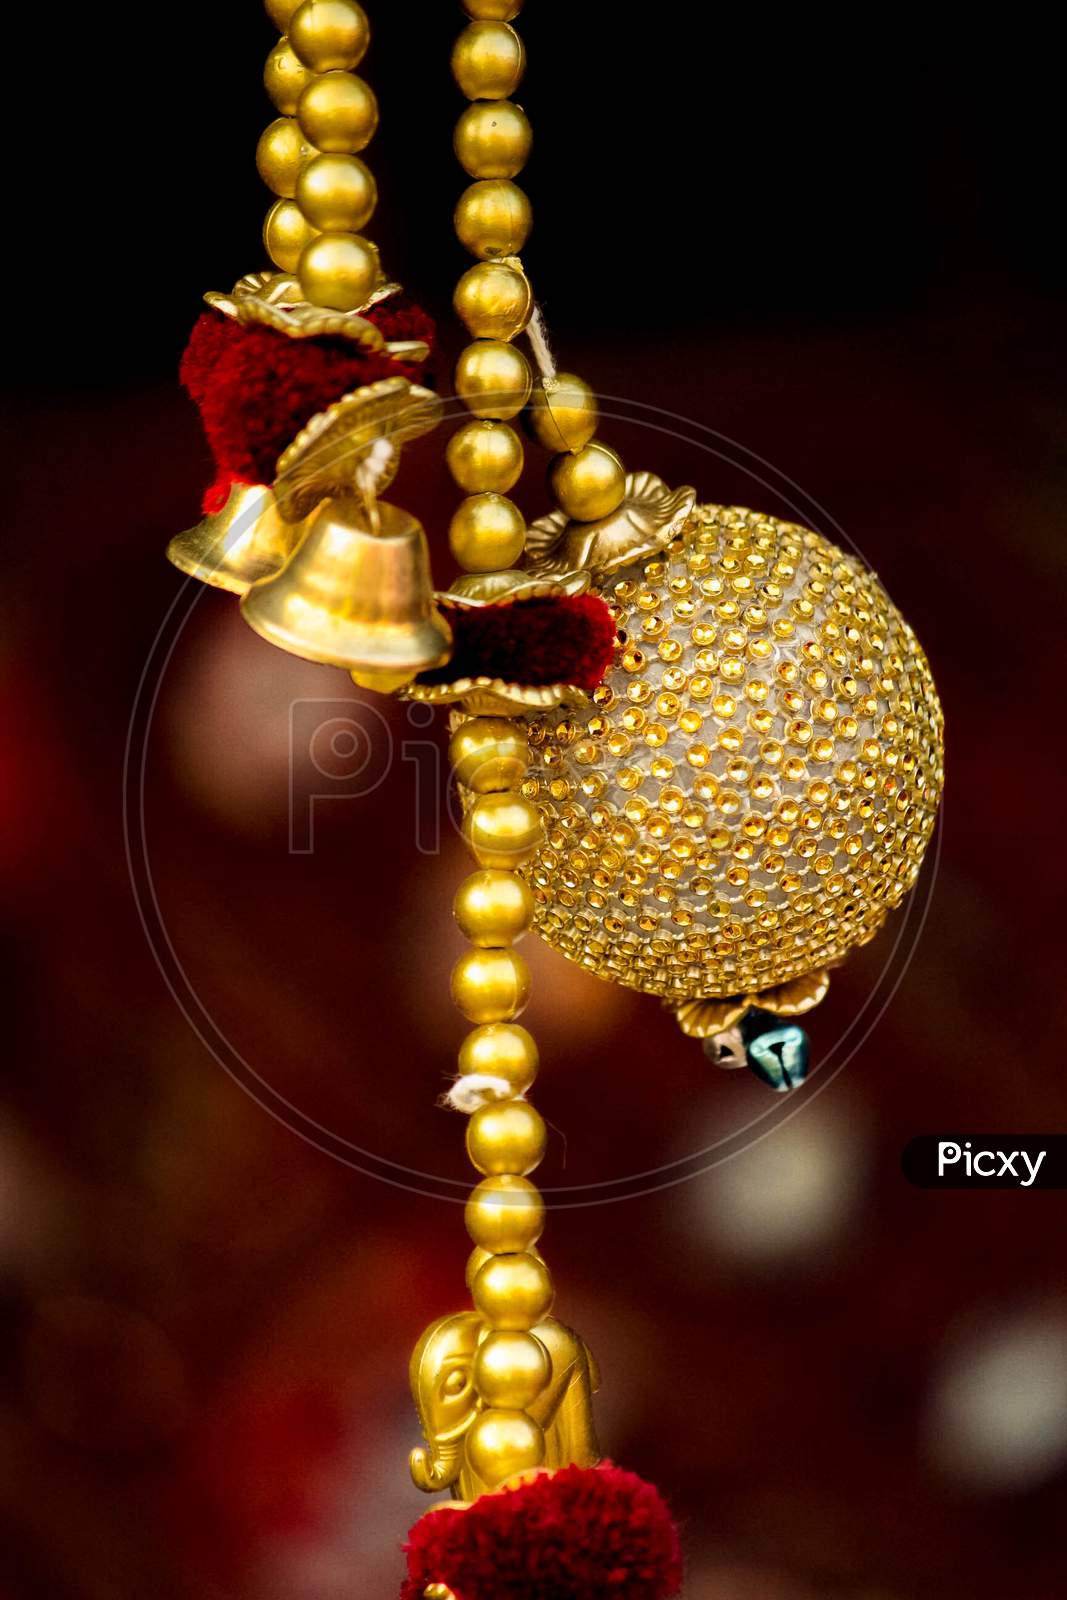 golden decorative  ornament